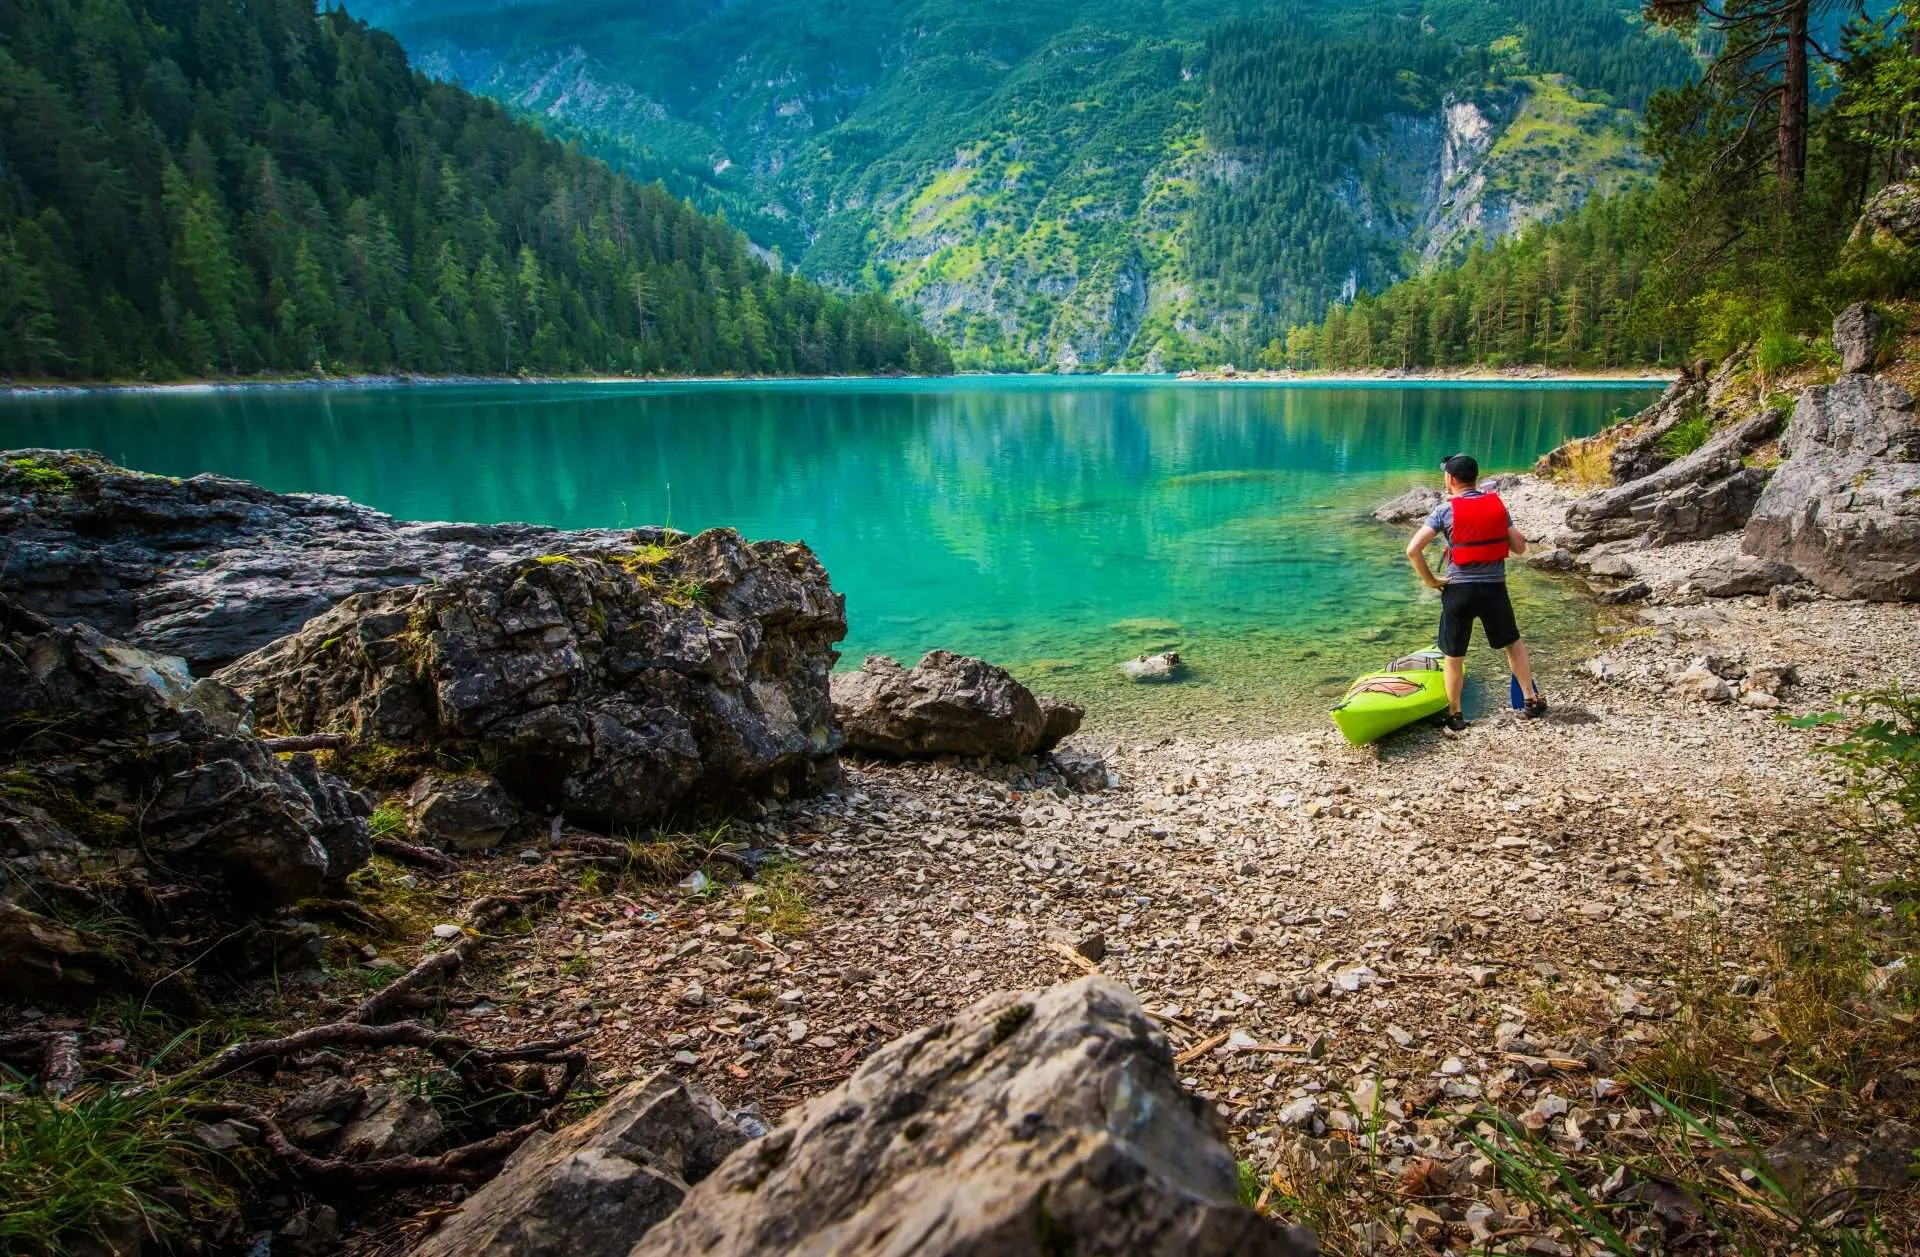 Camper standing next to kayak along stunning lake